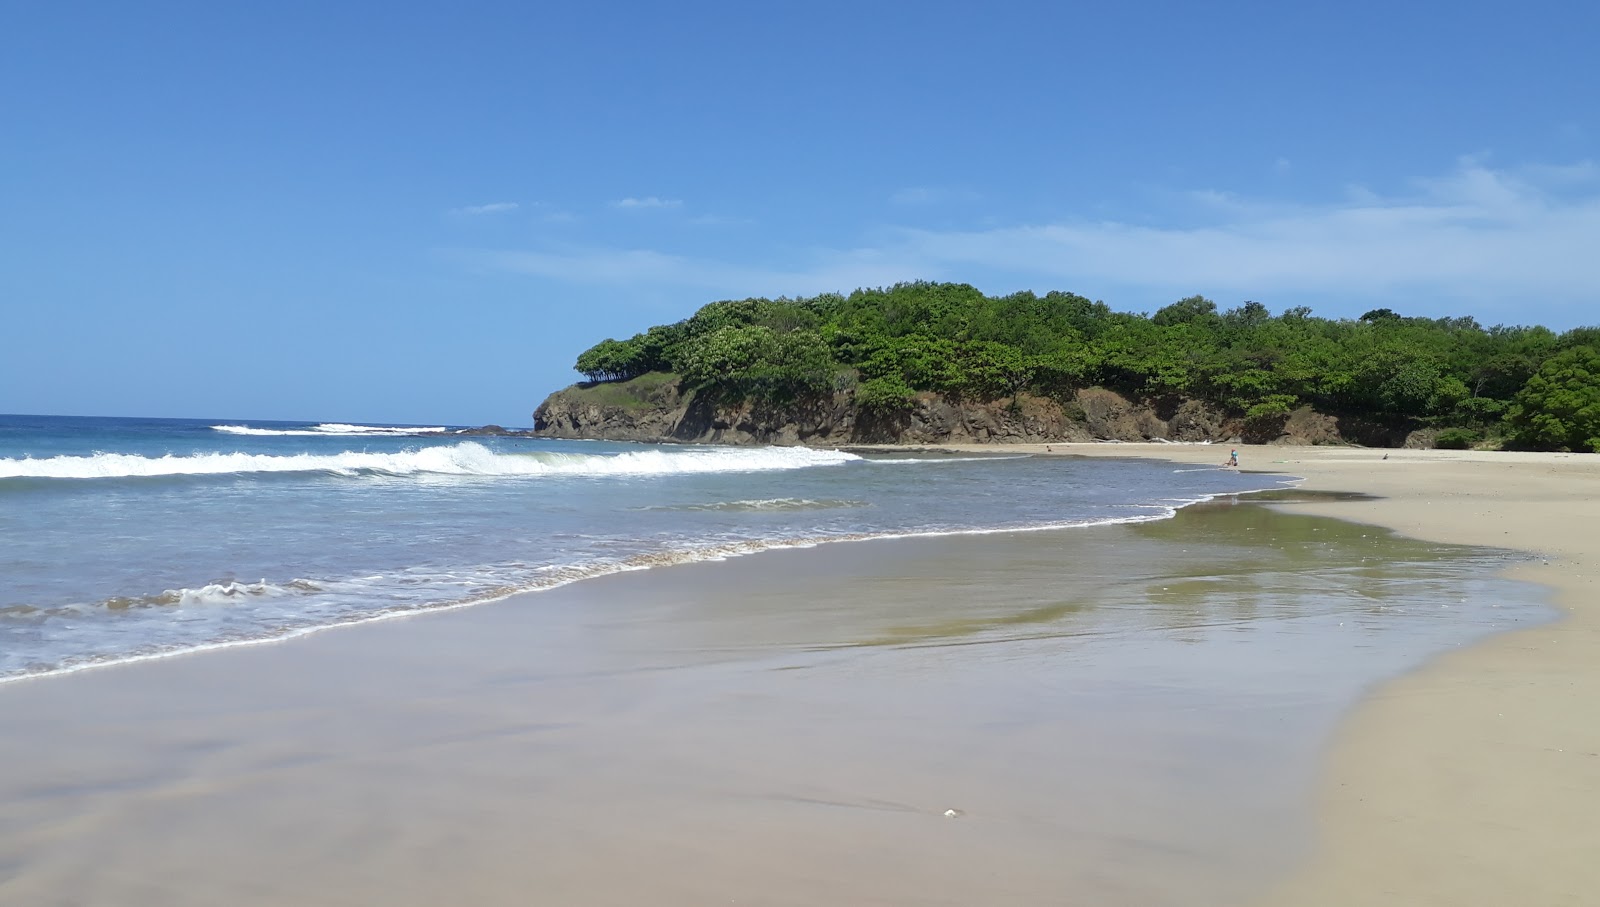 Fotografie cu Playa Ventanas cu plajă spațioasă